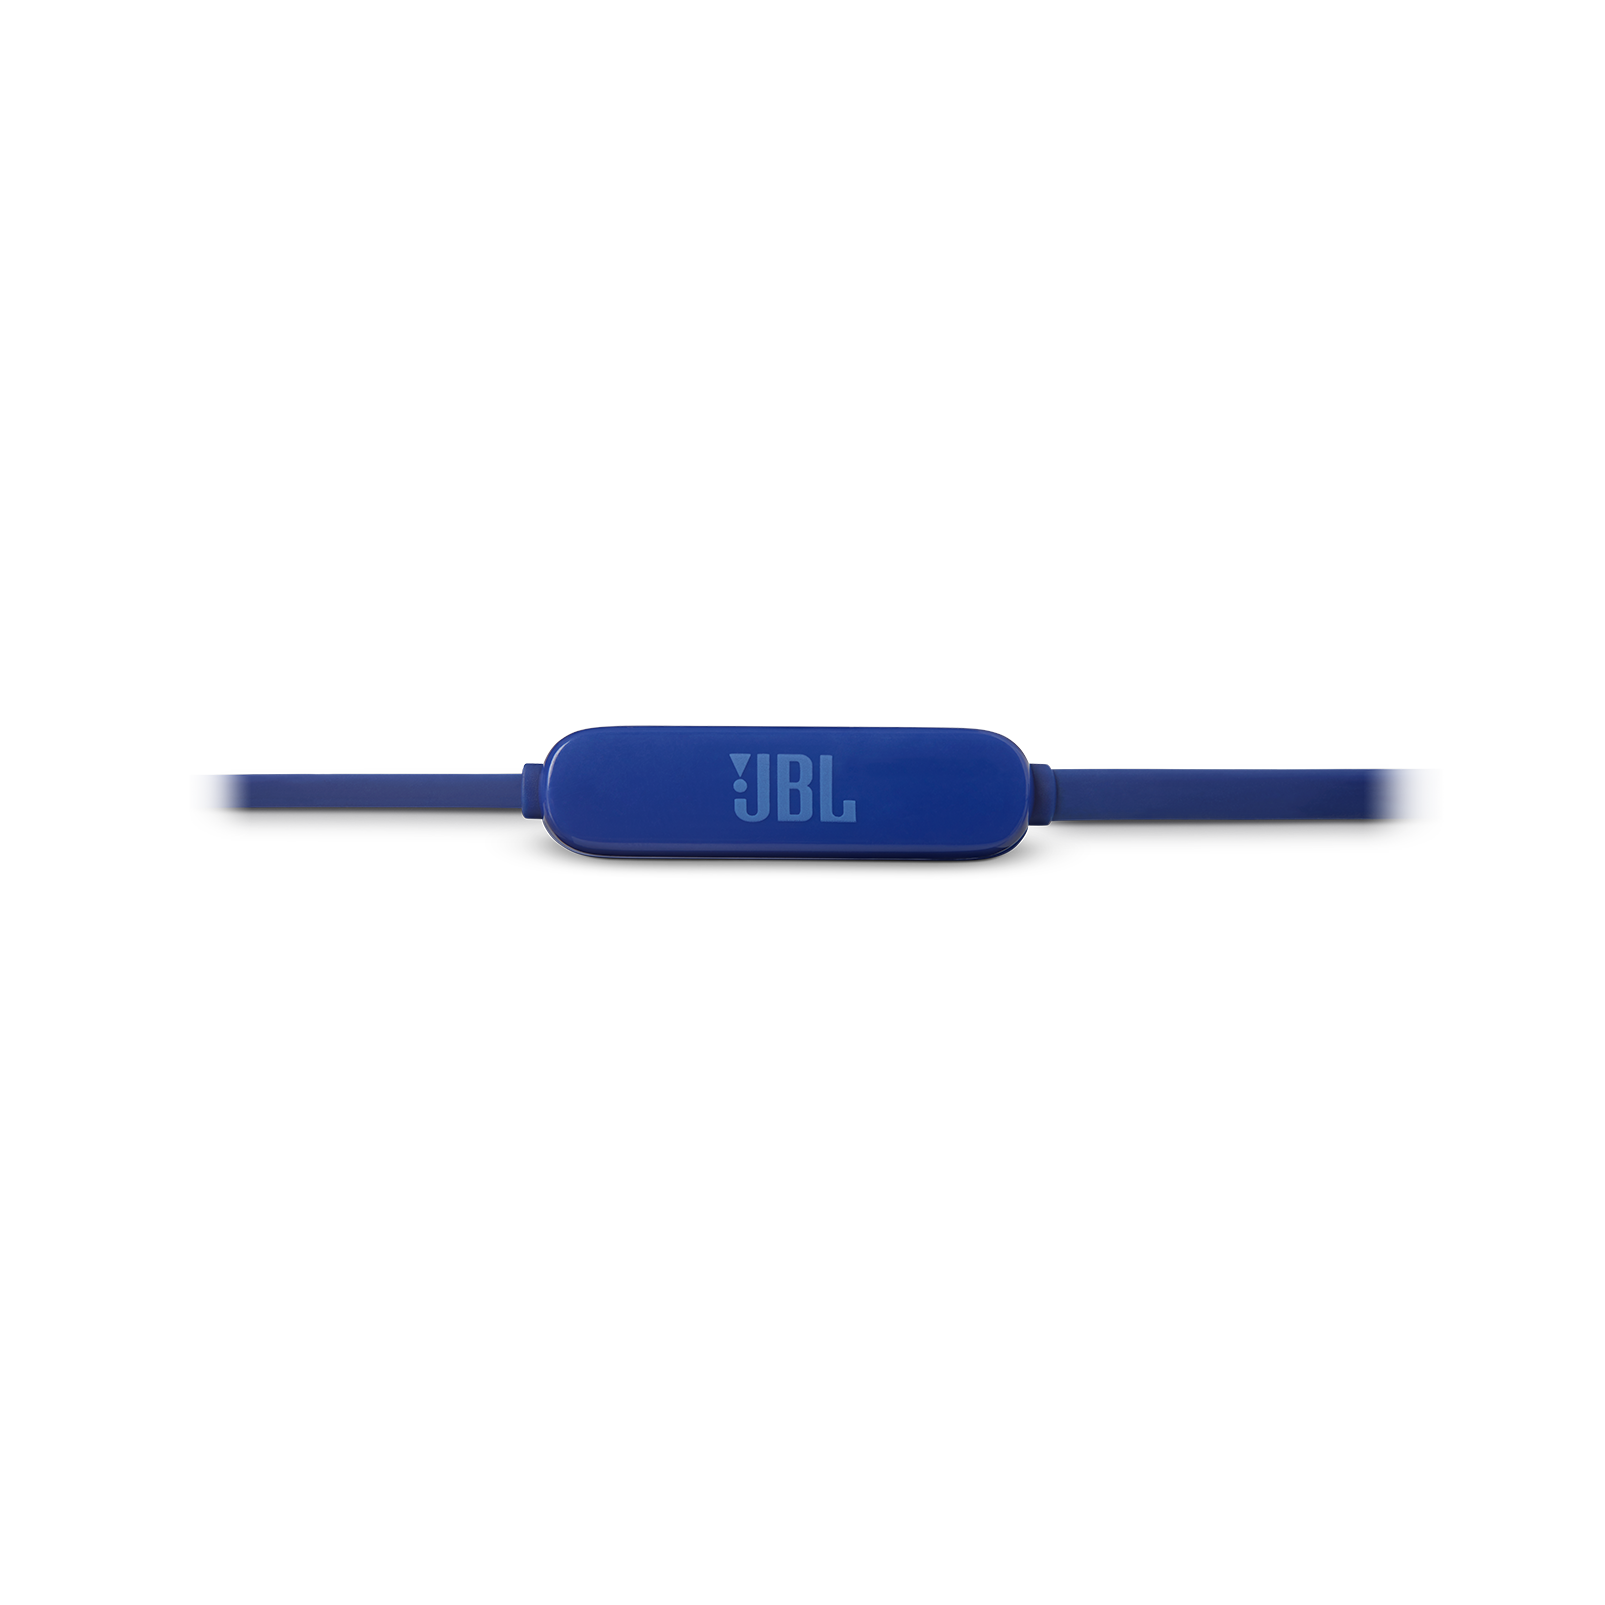 JBL Tune 110BT - Blue - Wireless in-ear headphones - Detailshot 1